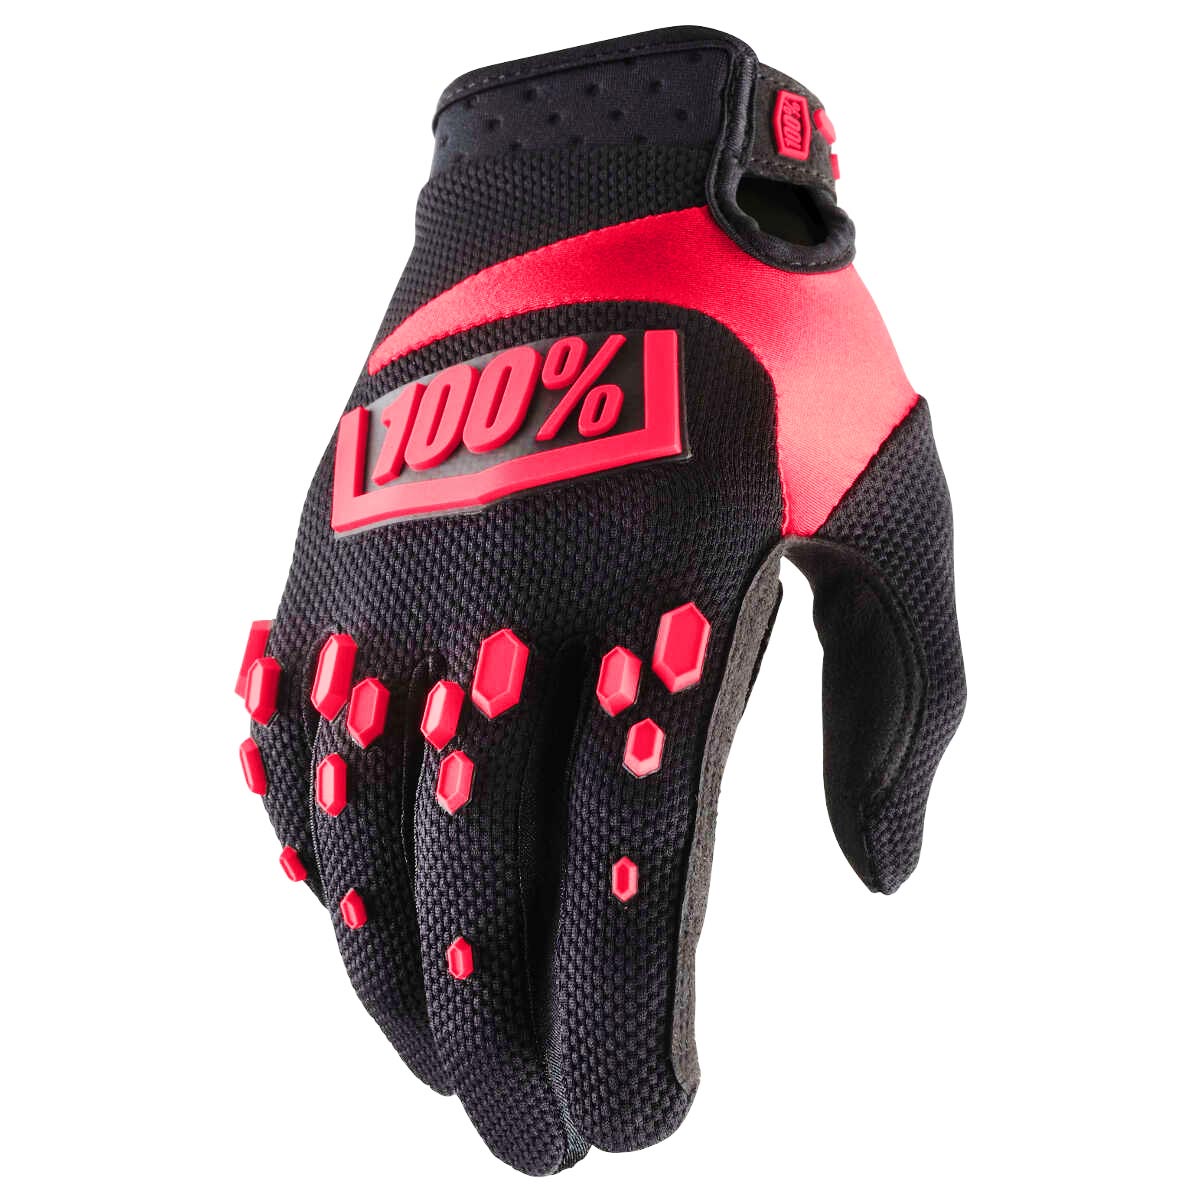 100% Kids Glove Airmatic Black/Red